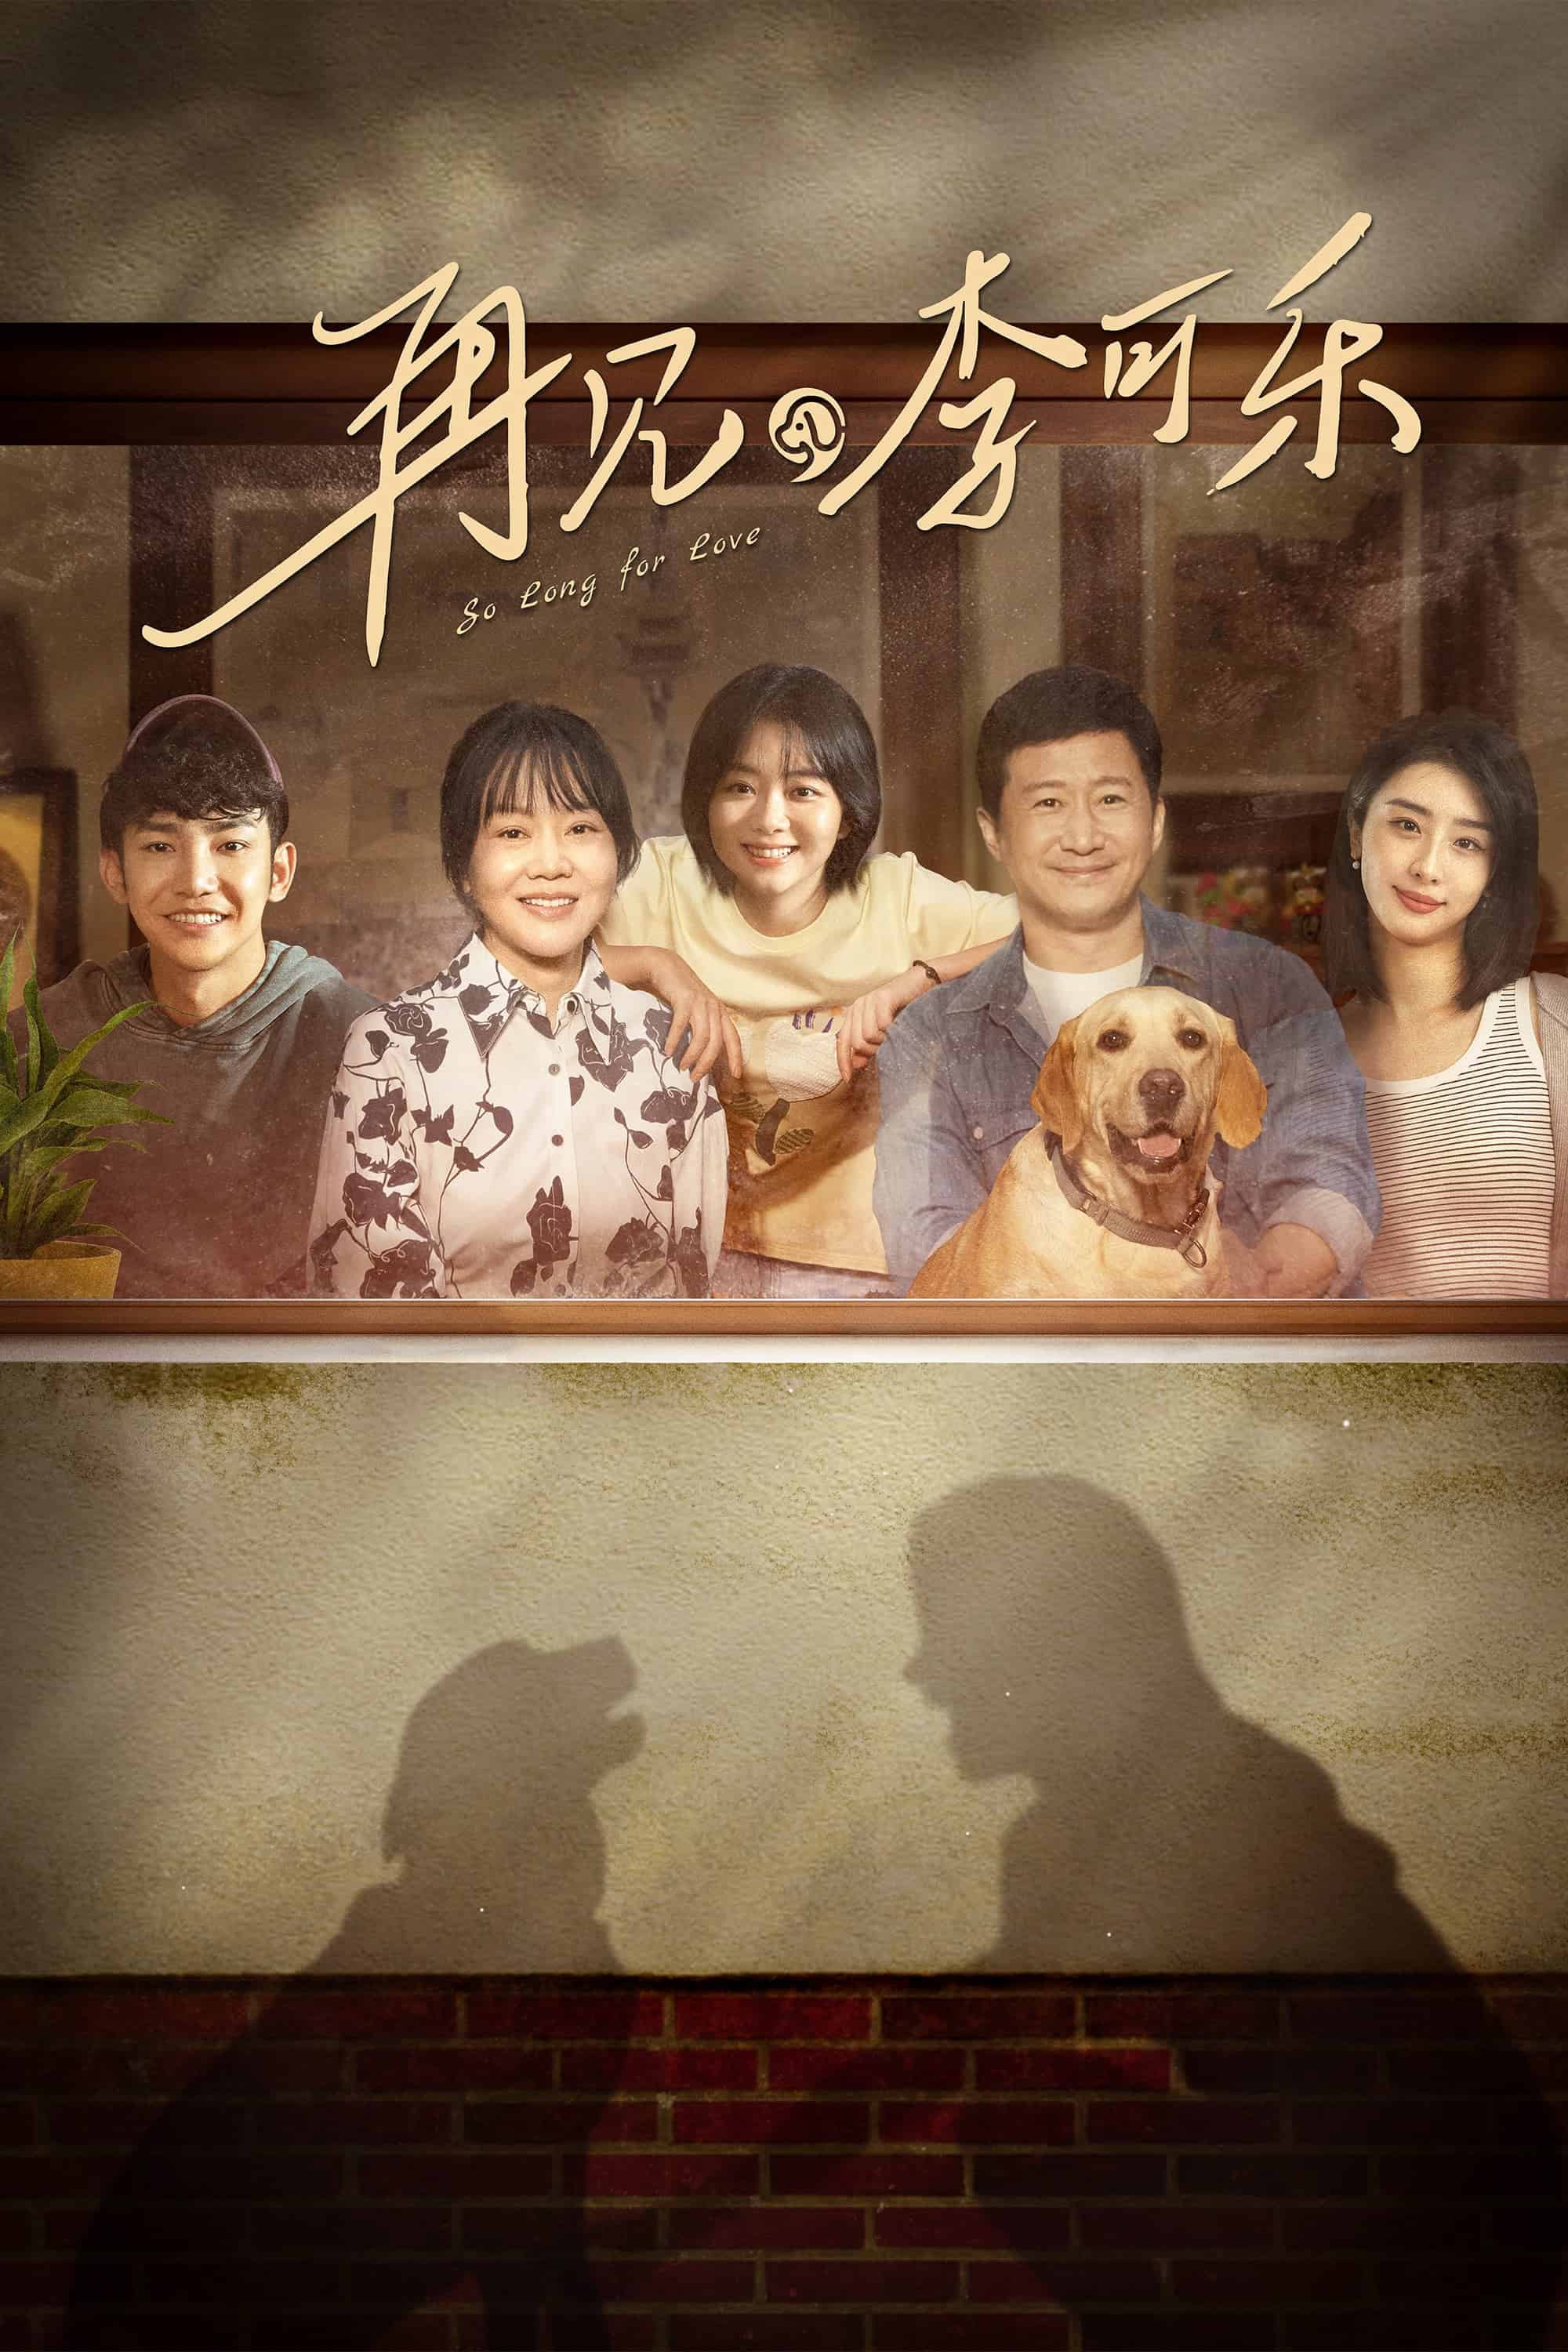 Phim Tạm Biệt, Lý Khả Lạc - So Long for Love (2023)